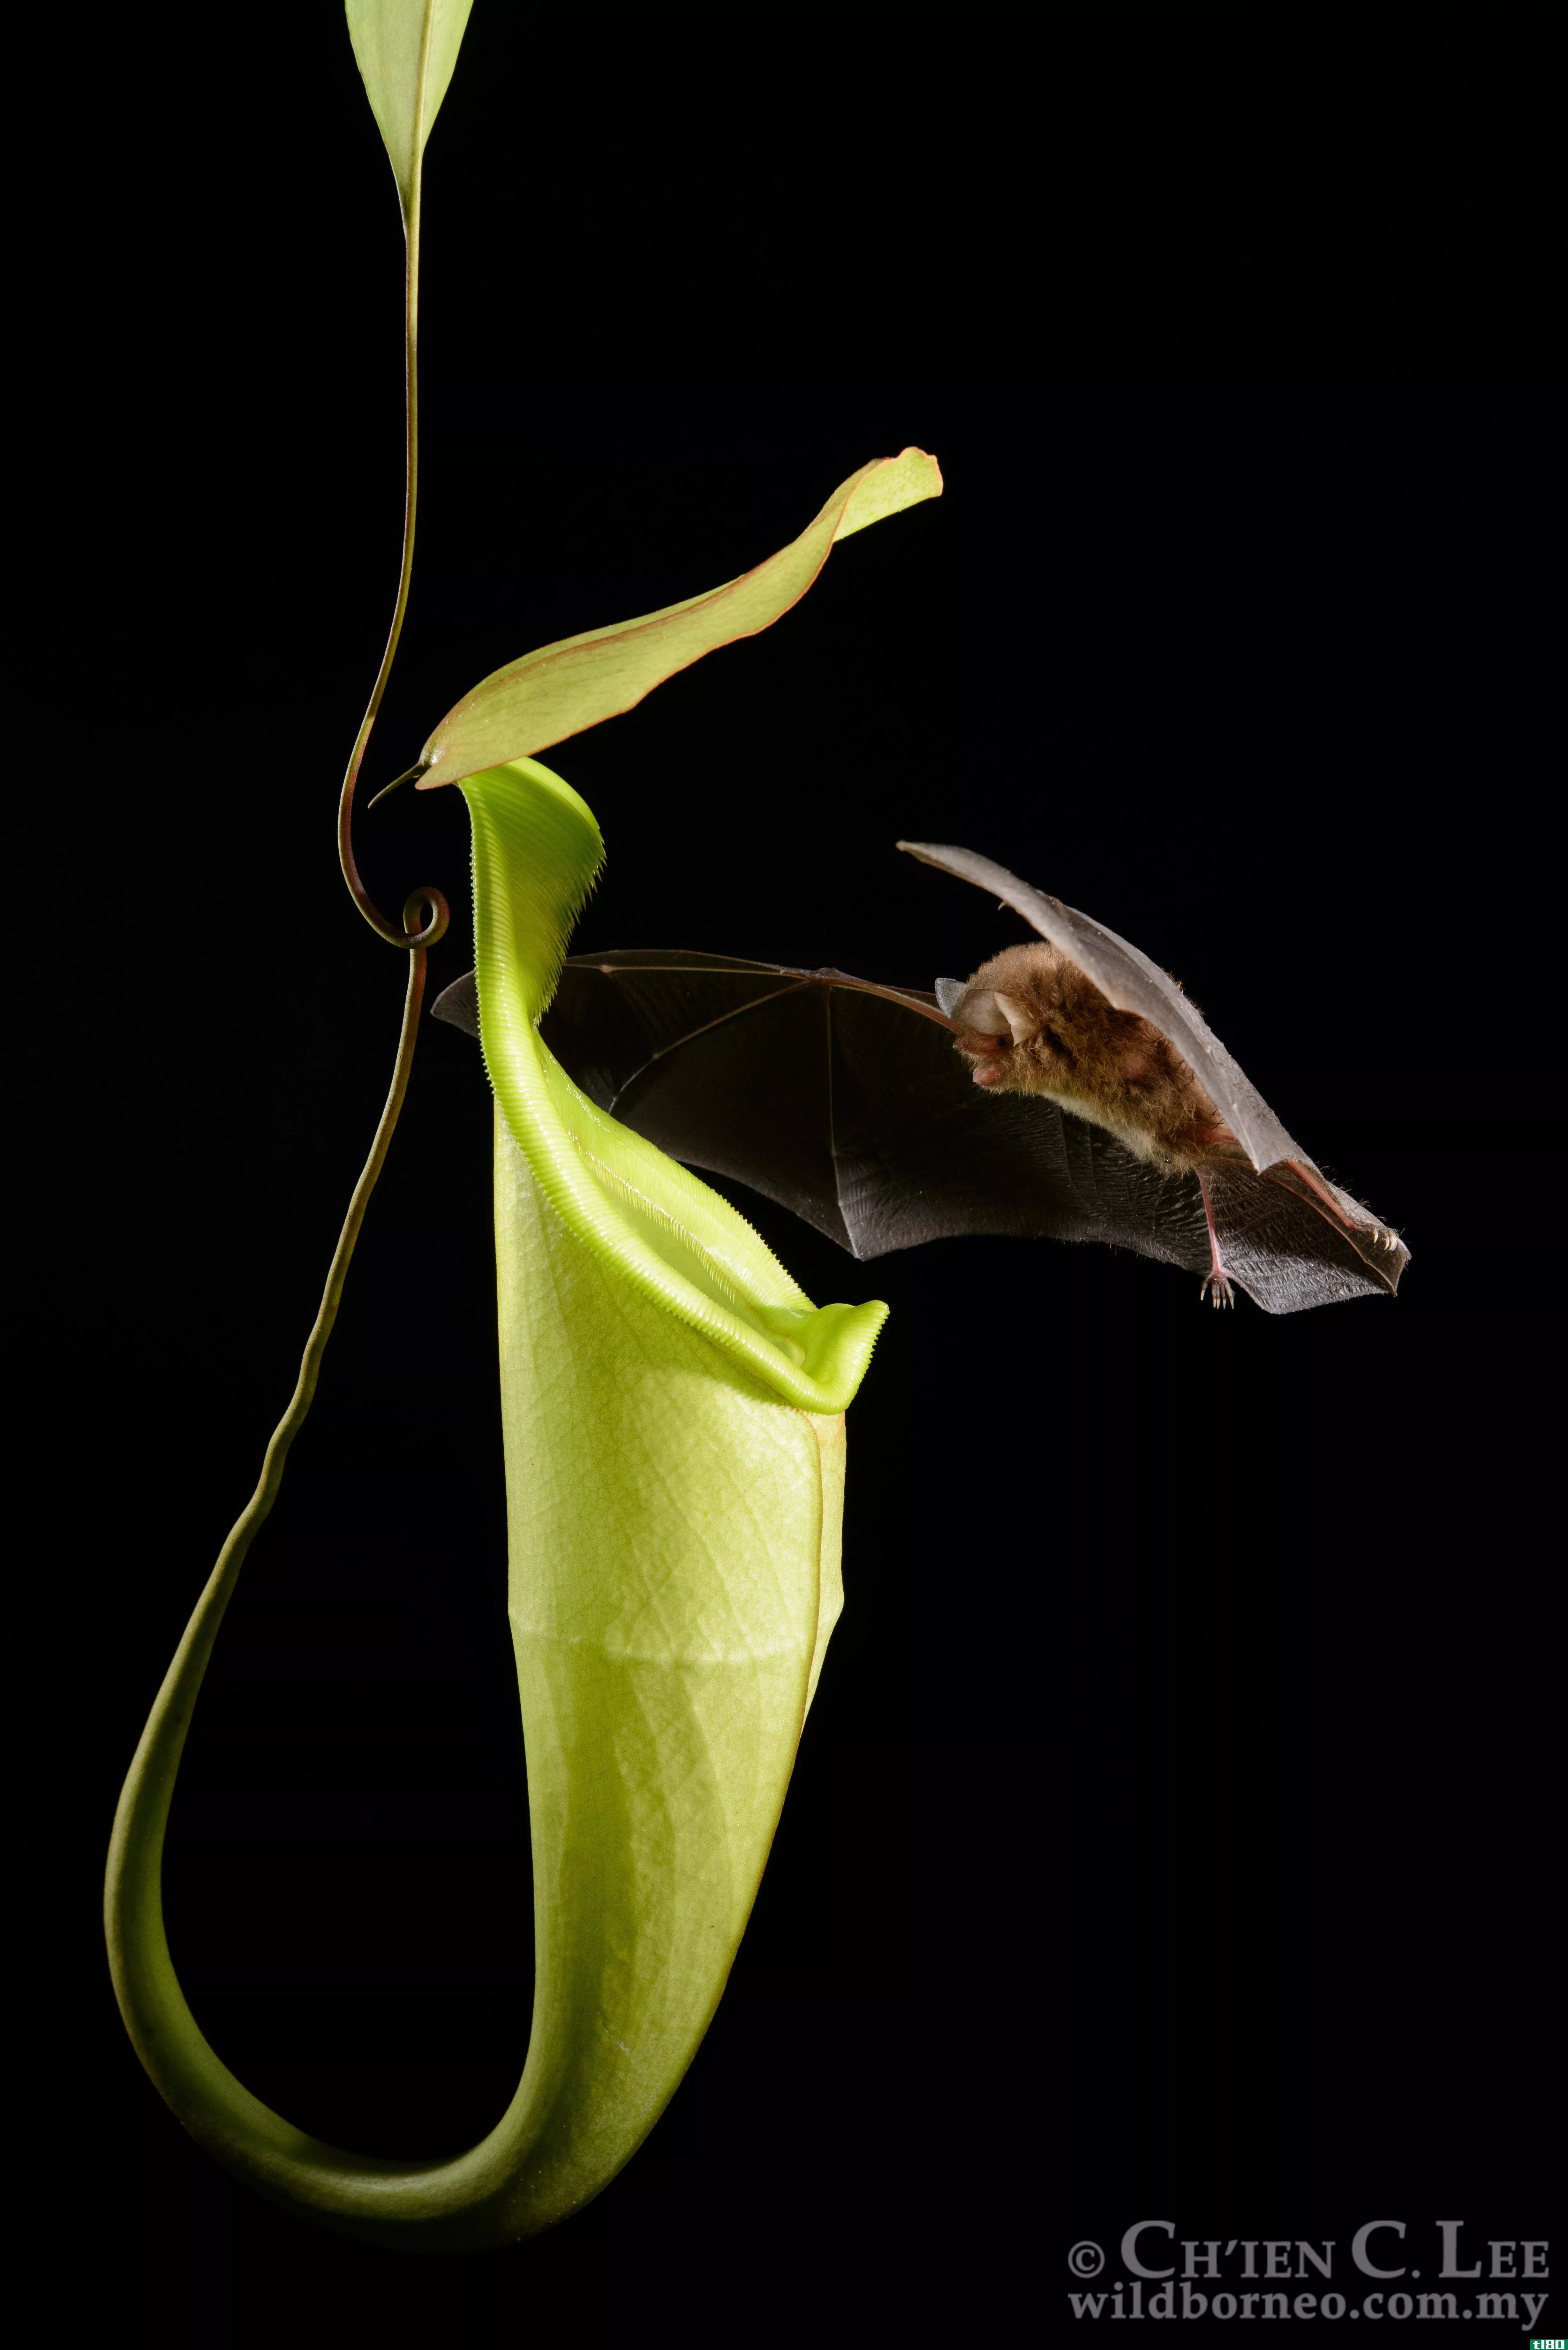 这种食肉植物的形状可以帮助蝙蝠找到它，所以蝙蝠可以在里面睡觉和拉屎